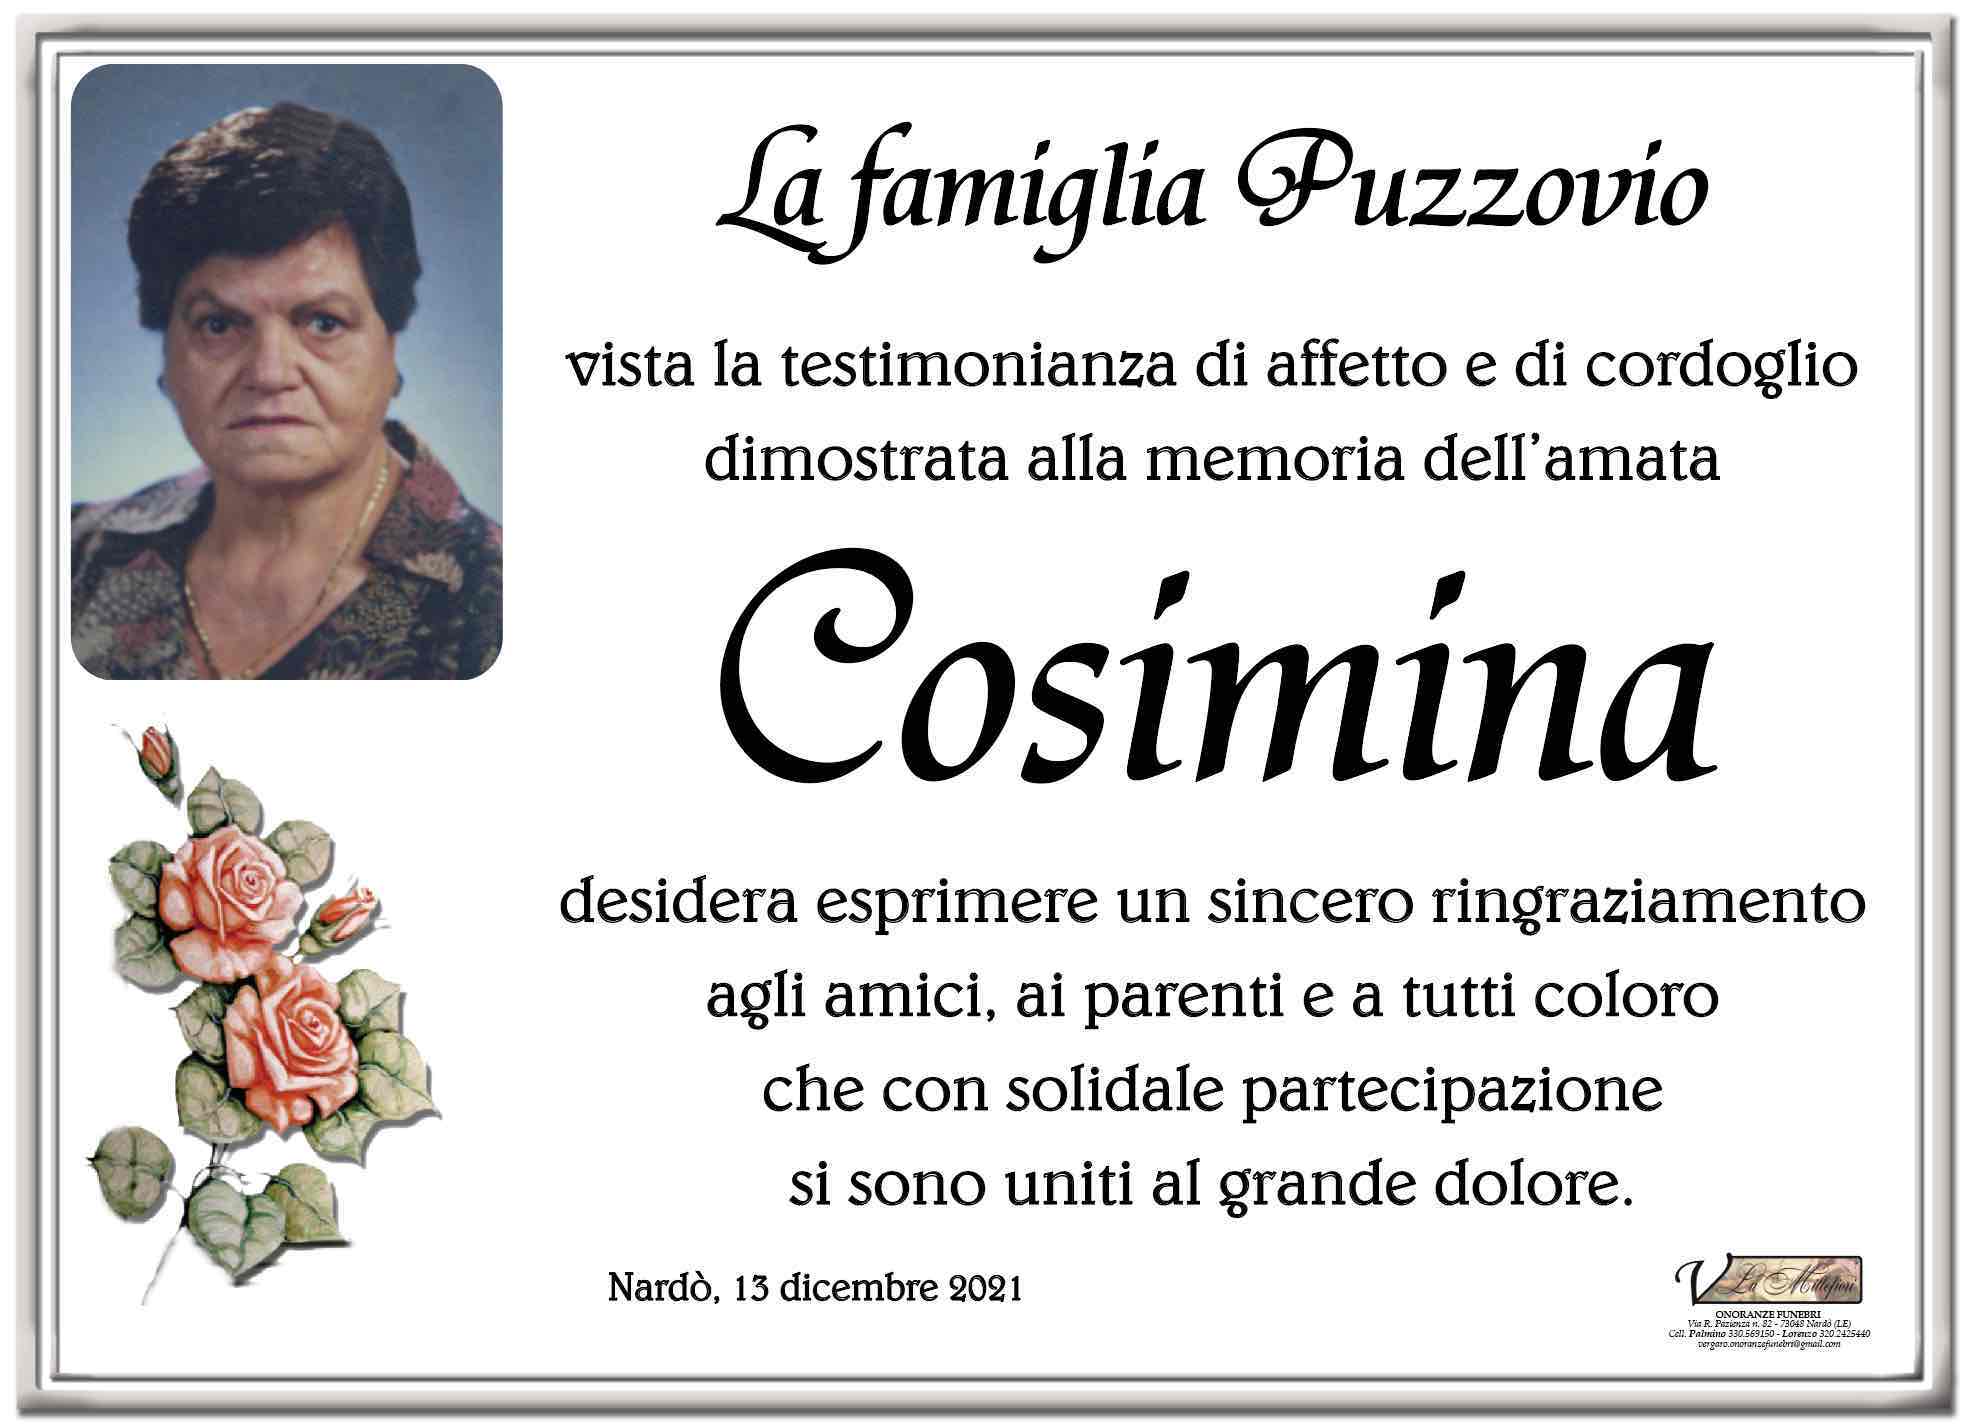 Cosima Puzzovio